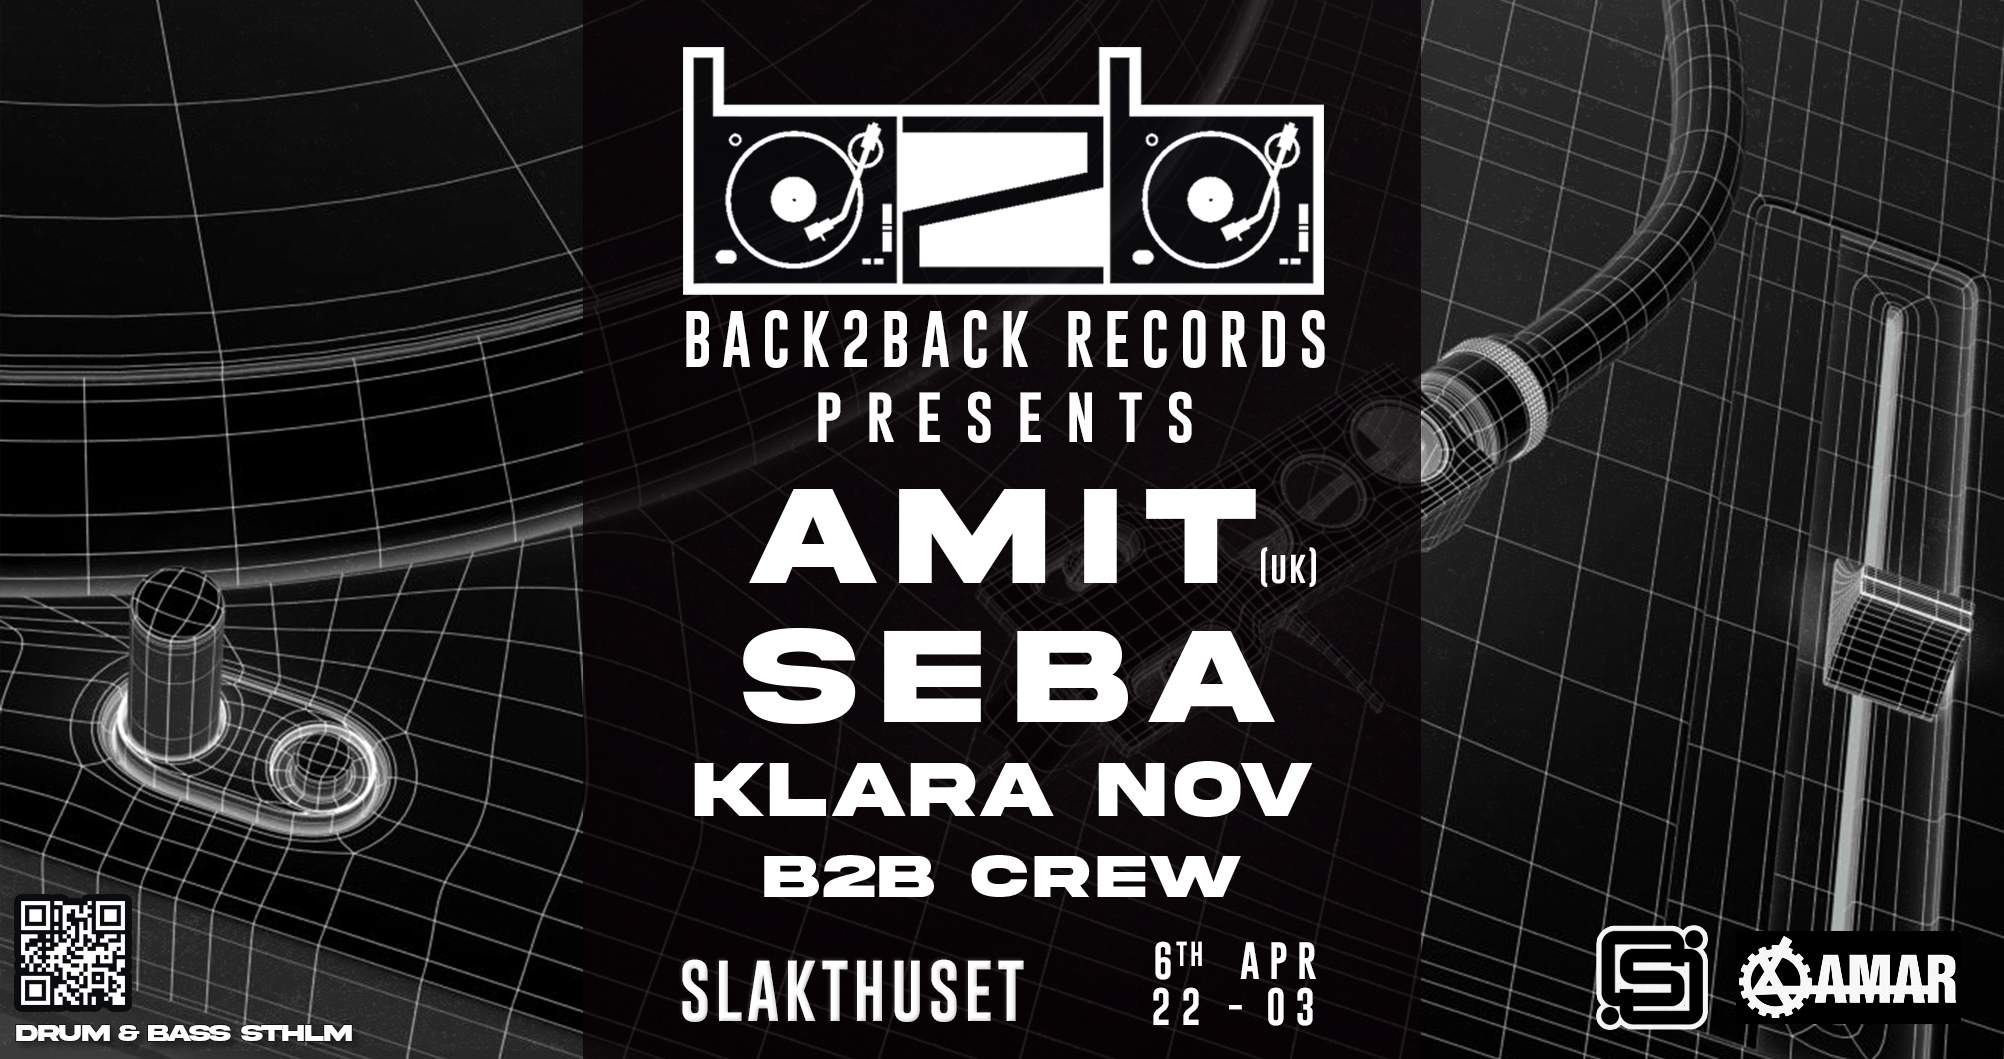 Back2Back presents: AMIT [UK], Seba, Klara Nov - フライヤー表